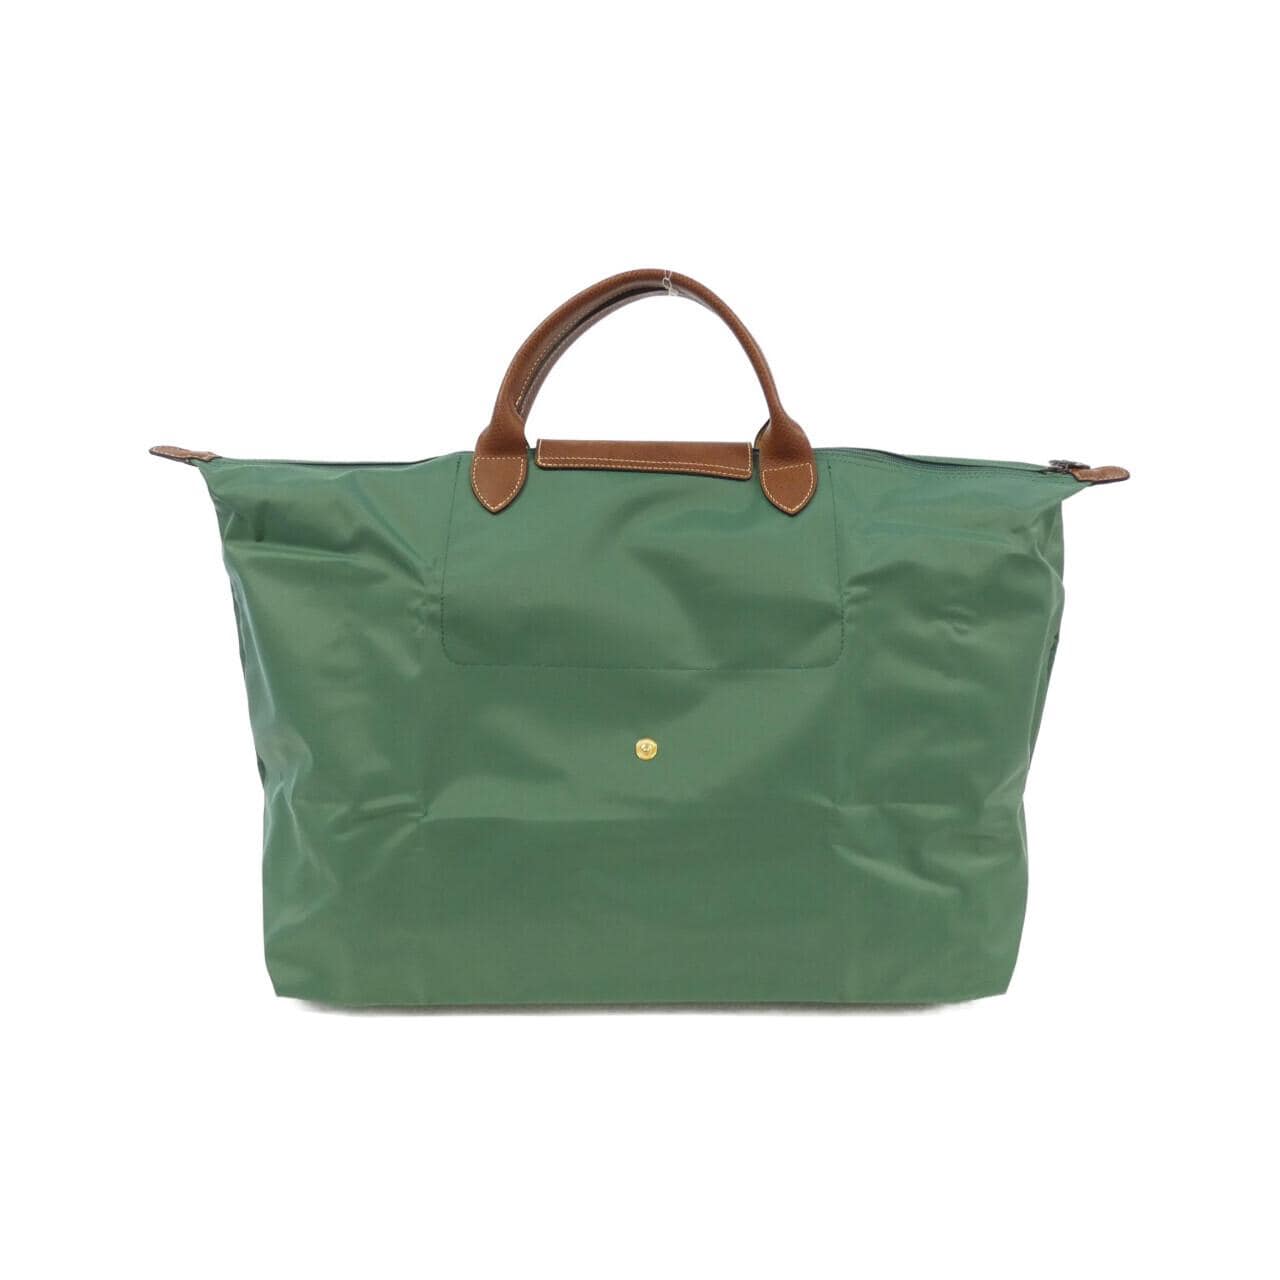 [BRAND NEW] Longchamp Le Pliage 1624 089 Boston Bag